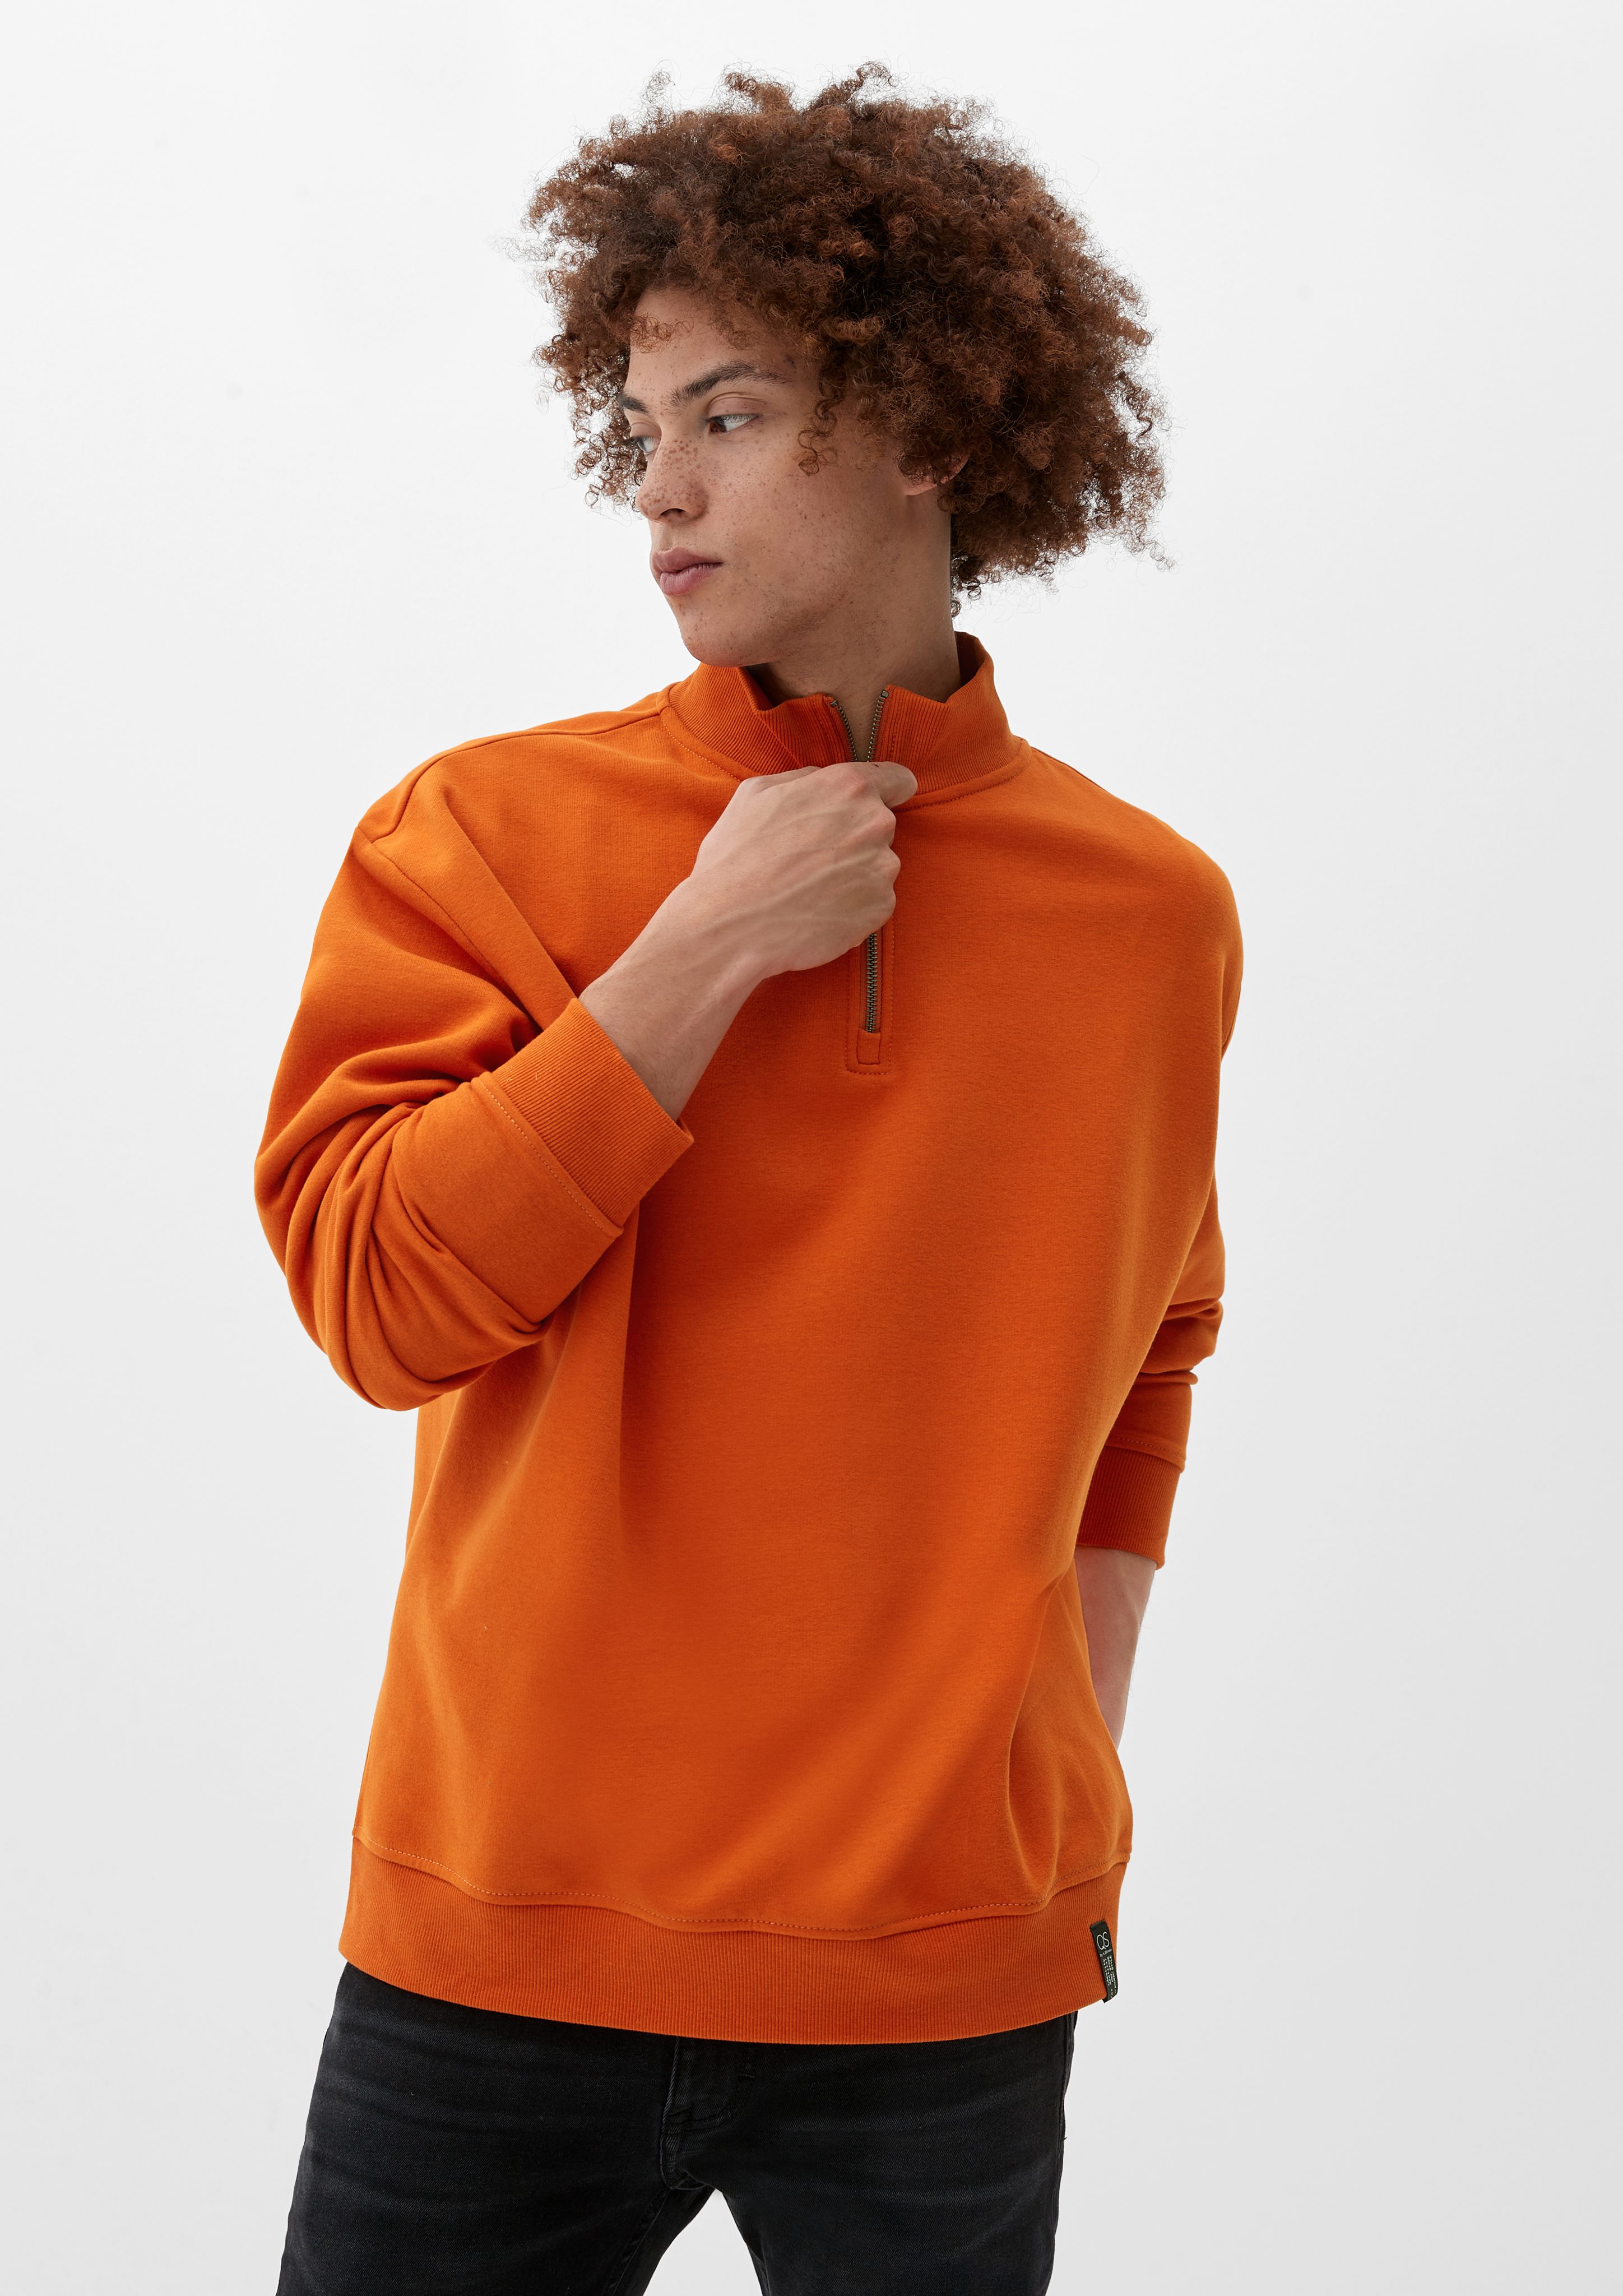 Reißverschluss orange Sweatshirt mit QS Sweatshirt